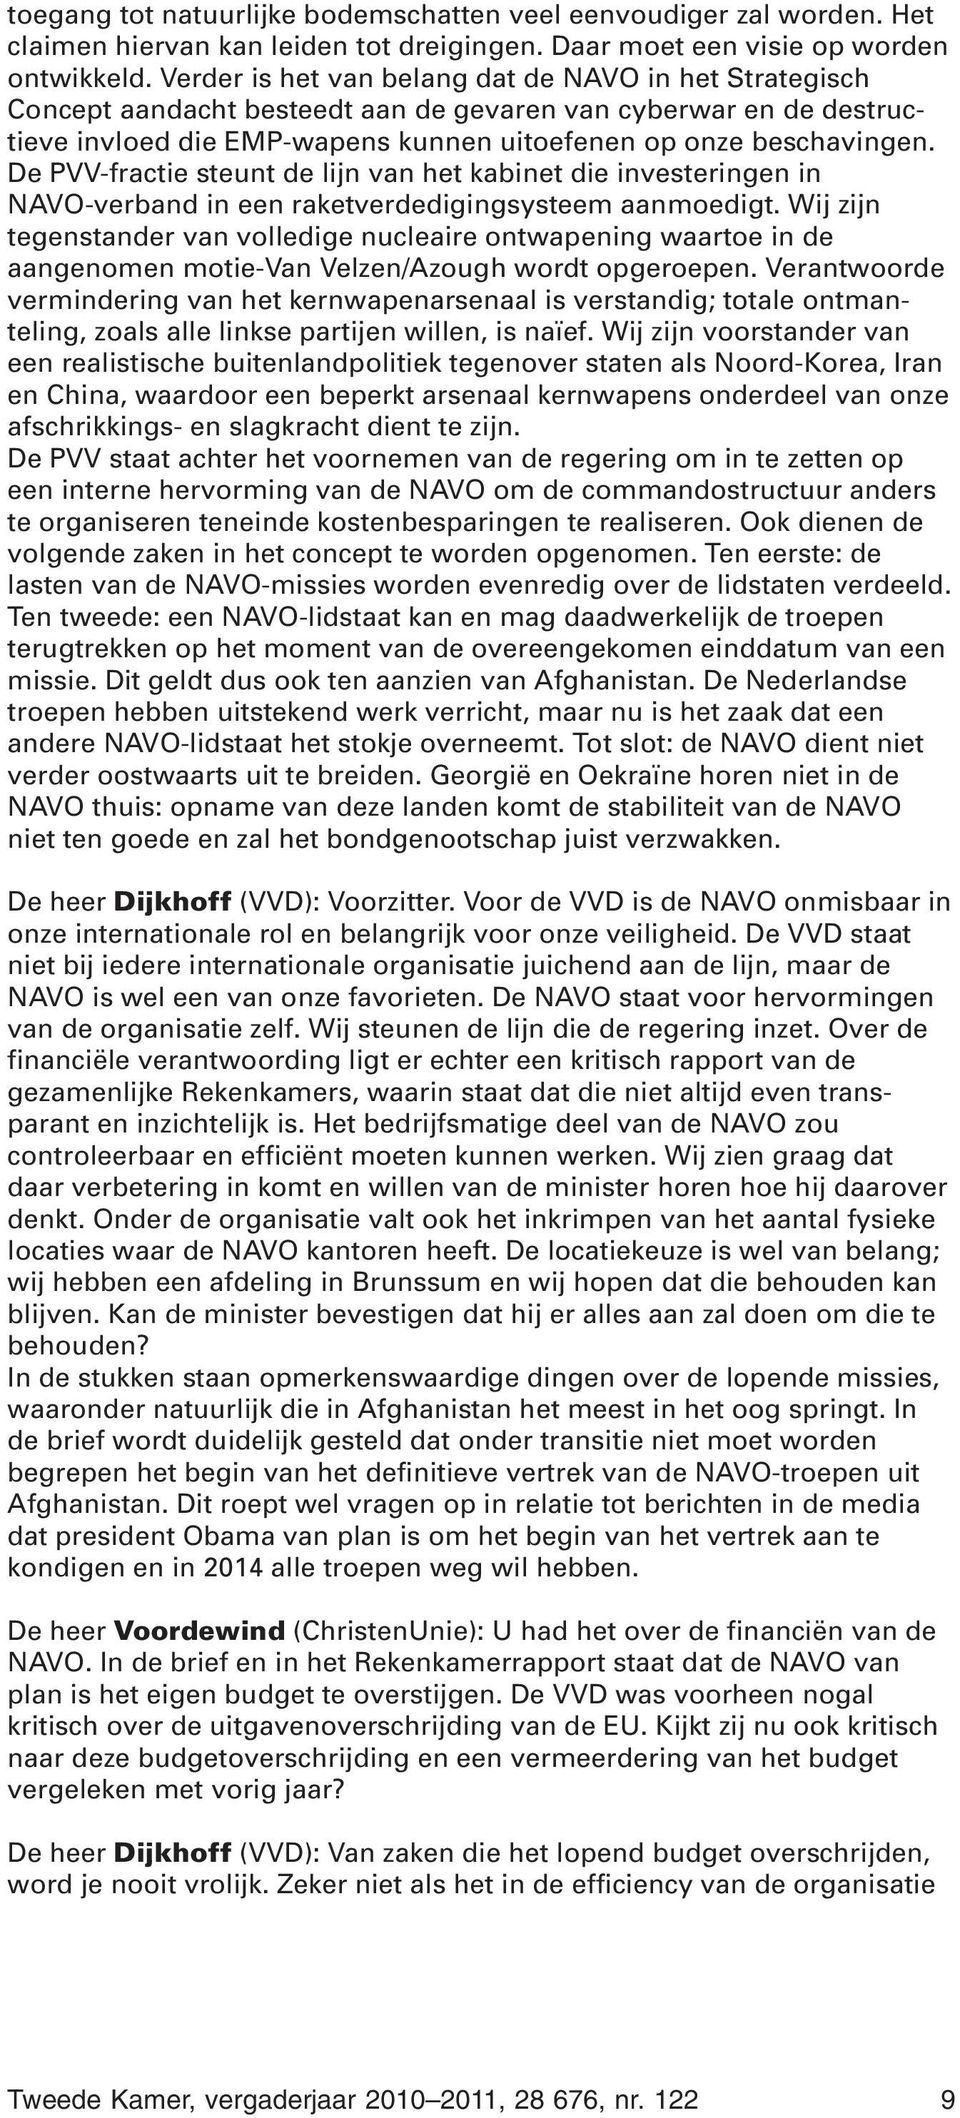 De PVV-fractie steunt de lijn van het kabinet die investeringen in NAVO-verband in een raketverdedigingsysteem aanmoedigt.